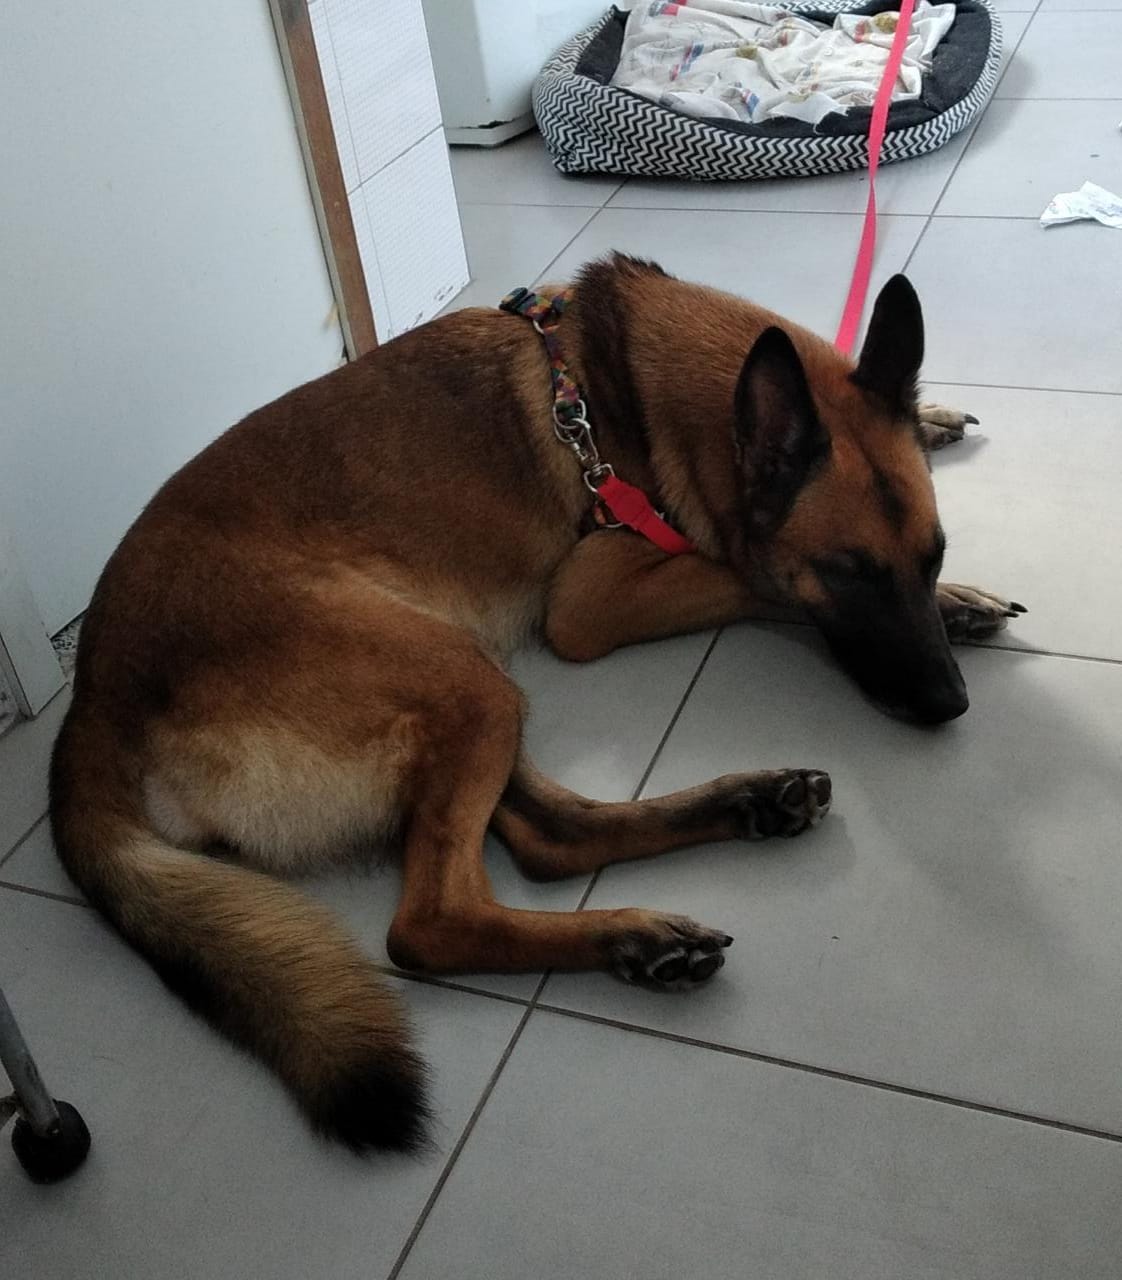 Cachorra que era utilizada para intimidar e atacar vítimas na Zona Sul do Rio já recebeu pedidos de adoção